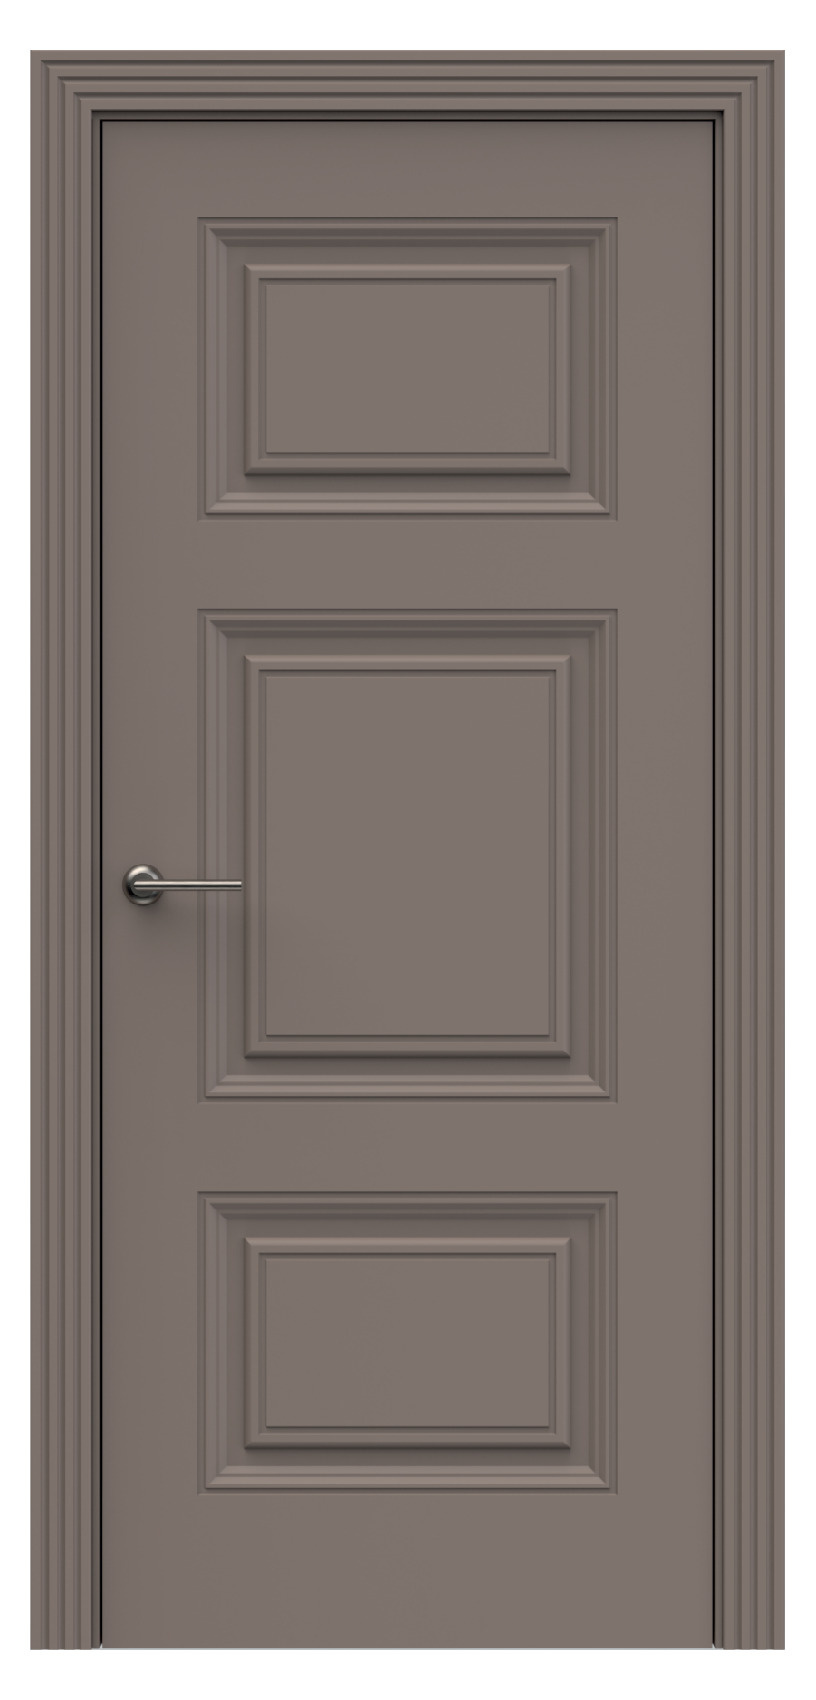 Questdoors Межкомнатная дверь QB10, арт. 17911 - фото №1